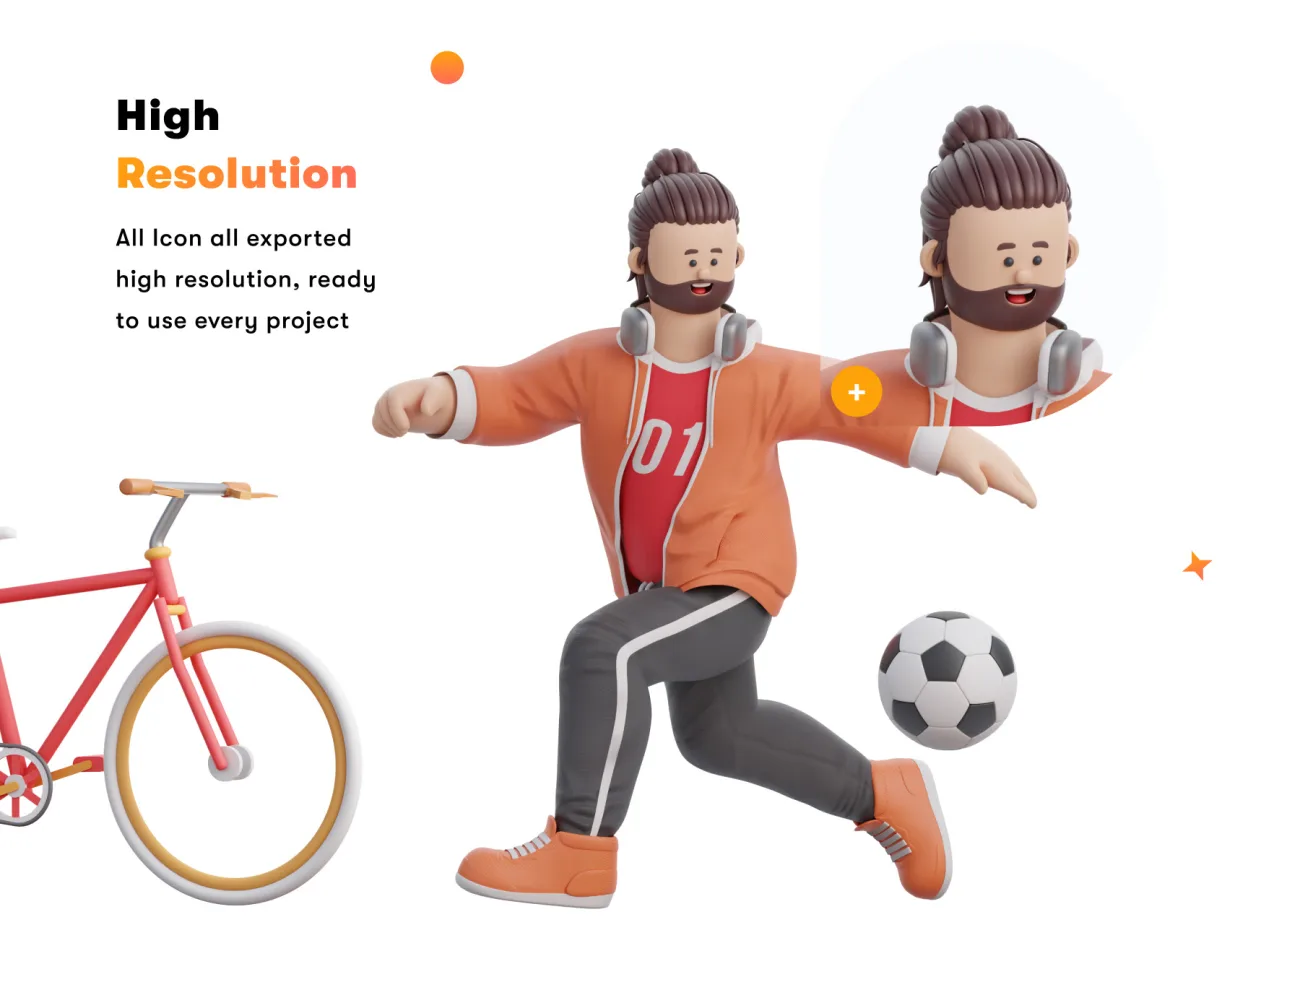 体育运动3D人物角色模型16款 3D Character Sports Pack .blender .png-3D/图标-到位啦UI